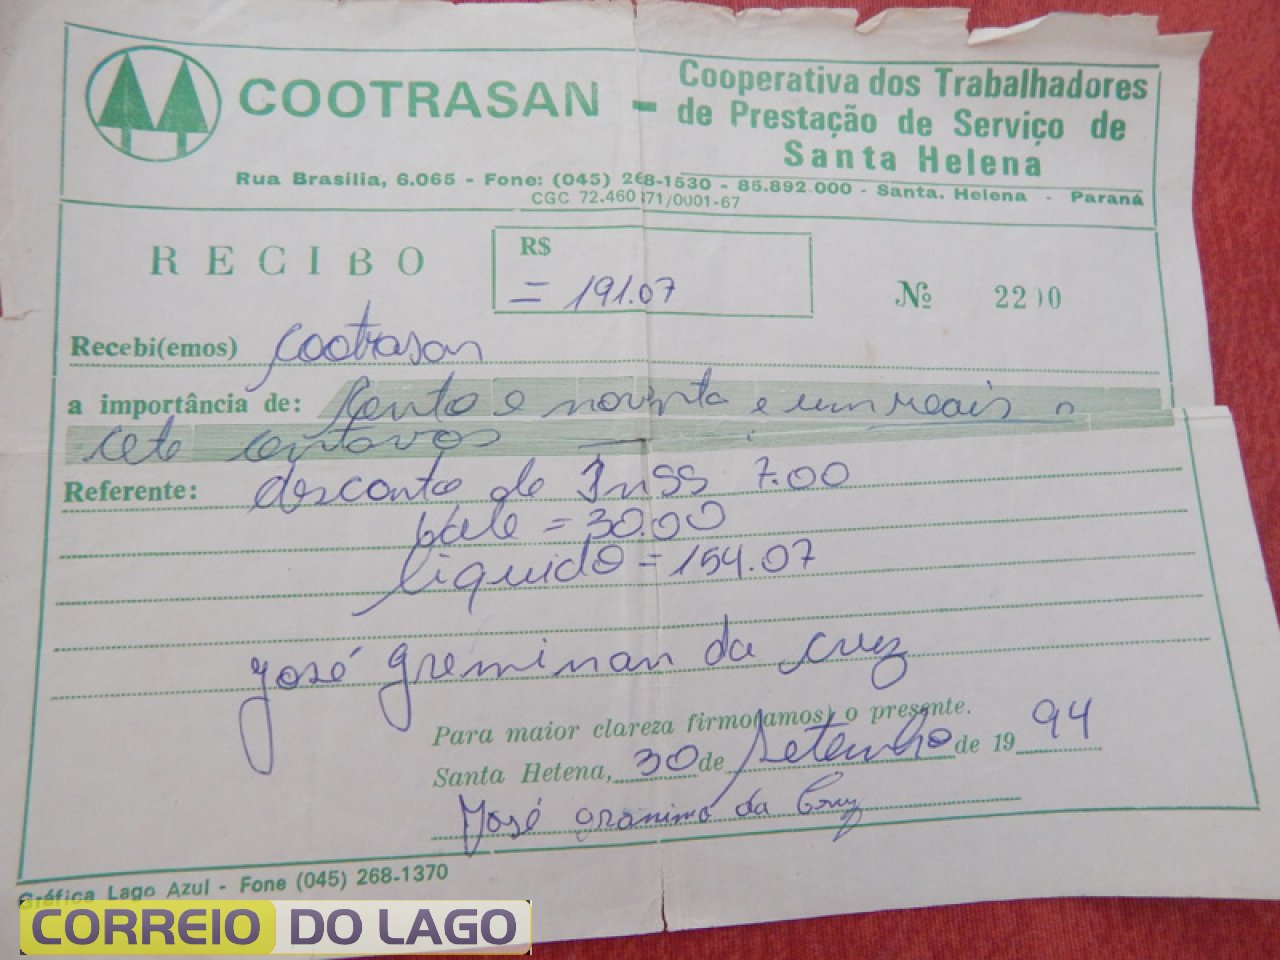 Empresa COOTRASAN no qual José Granima da Cruz trabalhou de pedreiro. Década de 1990.